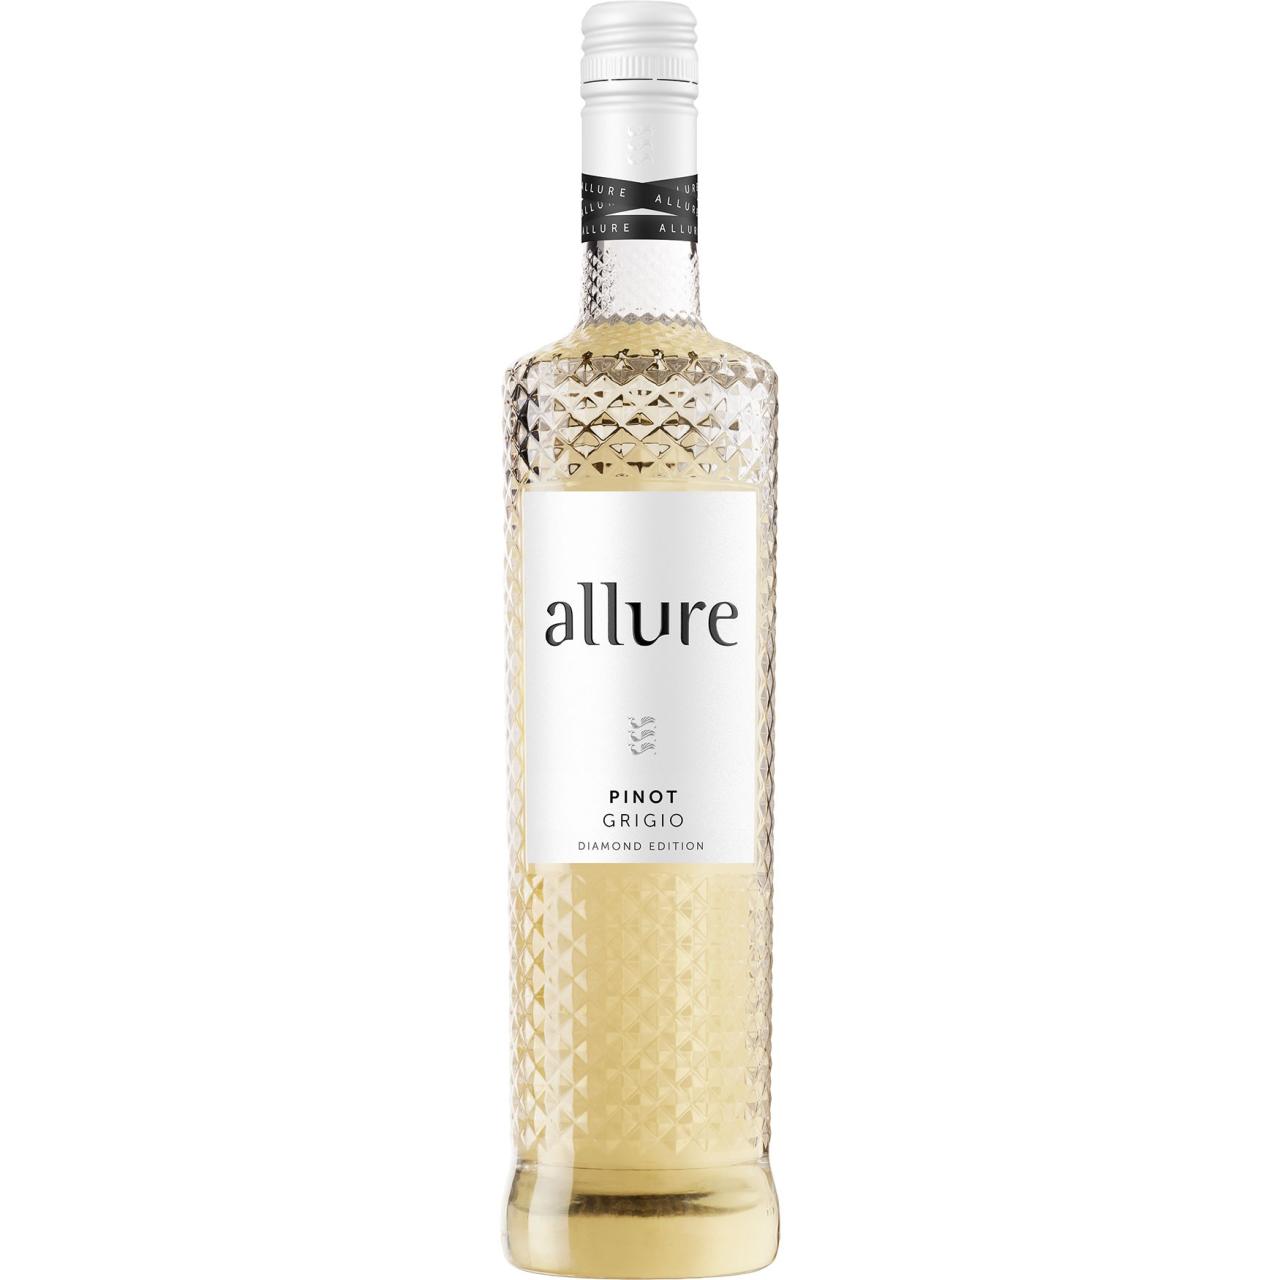 Allure Pinot Grigio 12% 0,75l